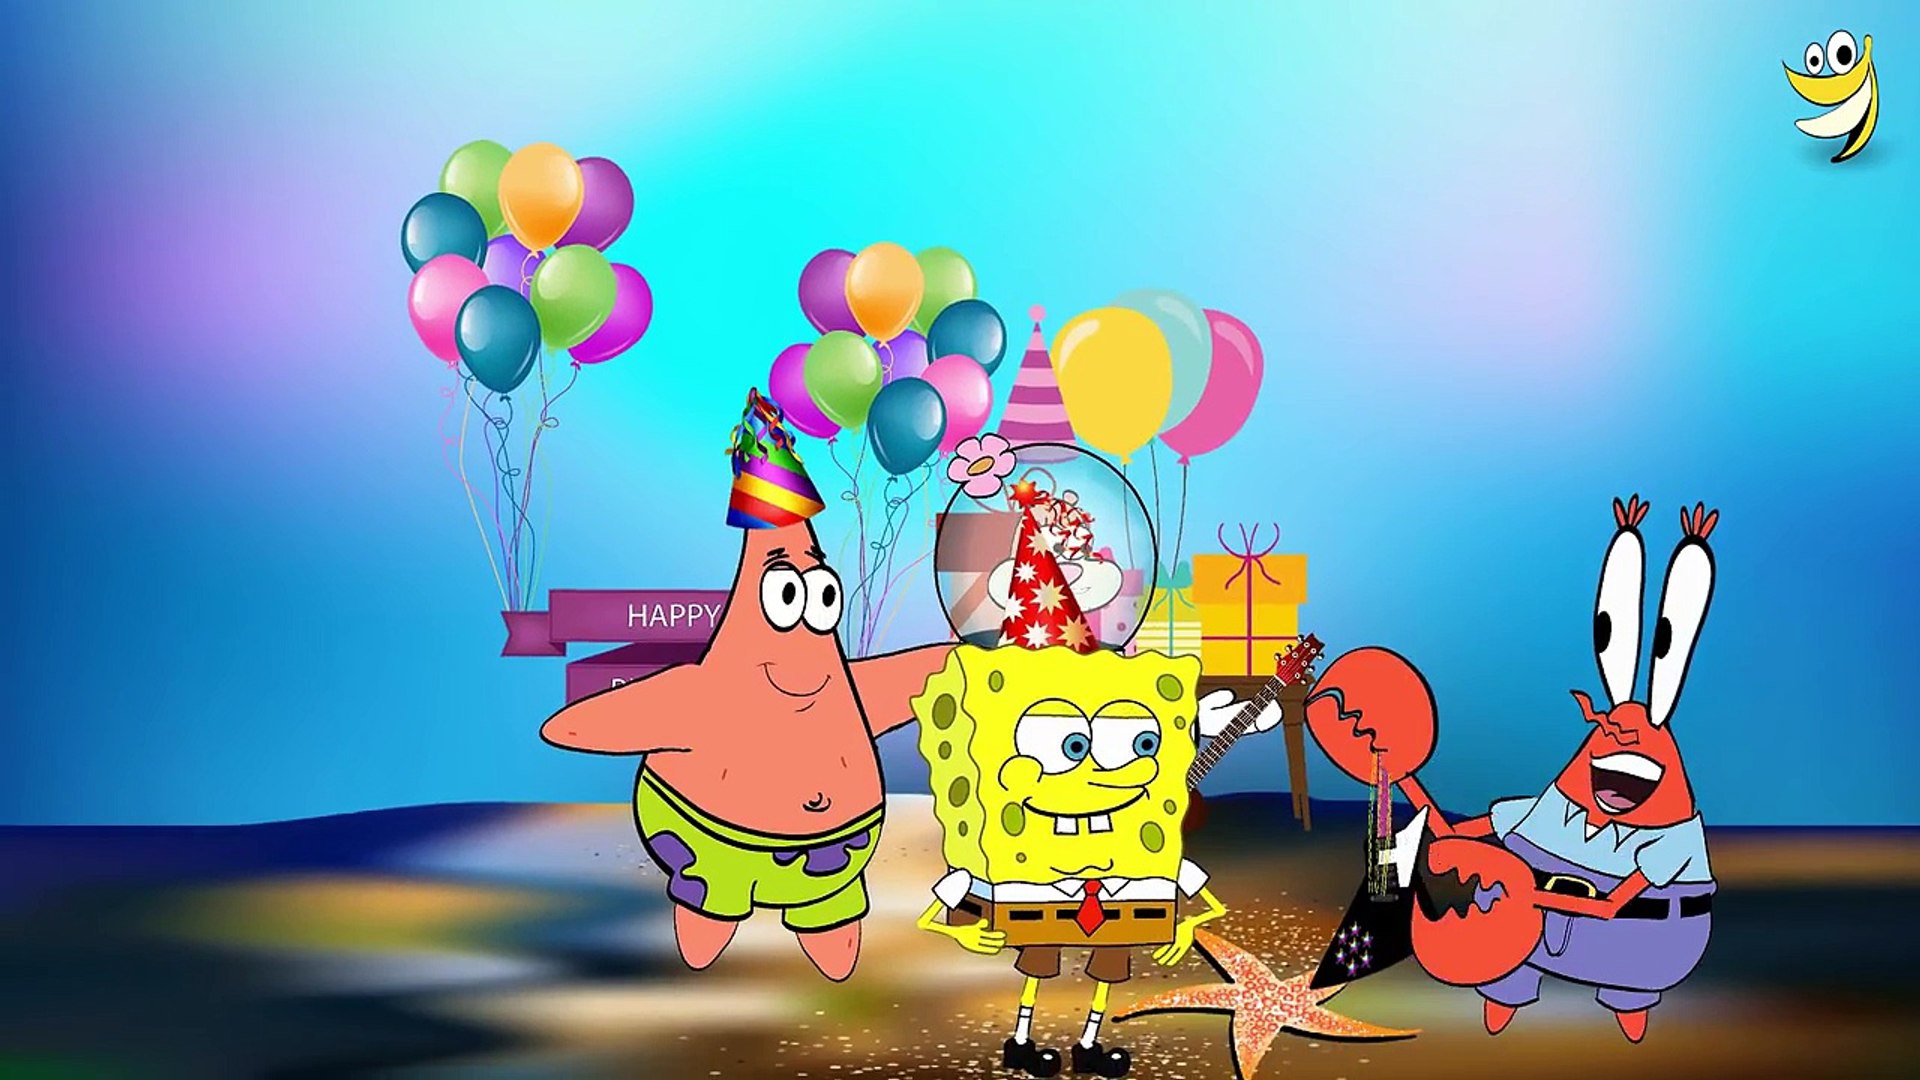 Nếu bạn yêu thích Spongebob Squarepants và muốn ăn mừng sinh nhật của mình bằng một bản nhạc hài hước và đáng yêu, thì chắc chắn không thể bỏ qua Spongebob Squarepants Happy Birthday Song. Bài hát này sẽ làm cho buổi tiệc sinh nhật của bạn trở nên tuyệt vời hơn bao giờ hết. Đừng bỏ lỡ cơ hội để thưởng thức điều này!